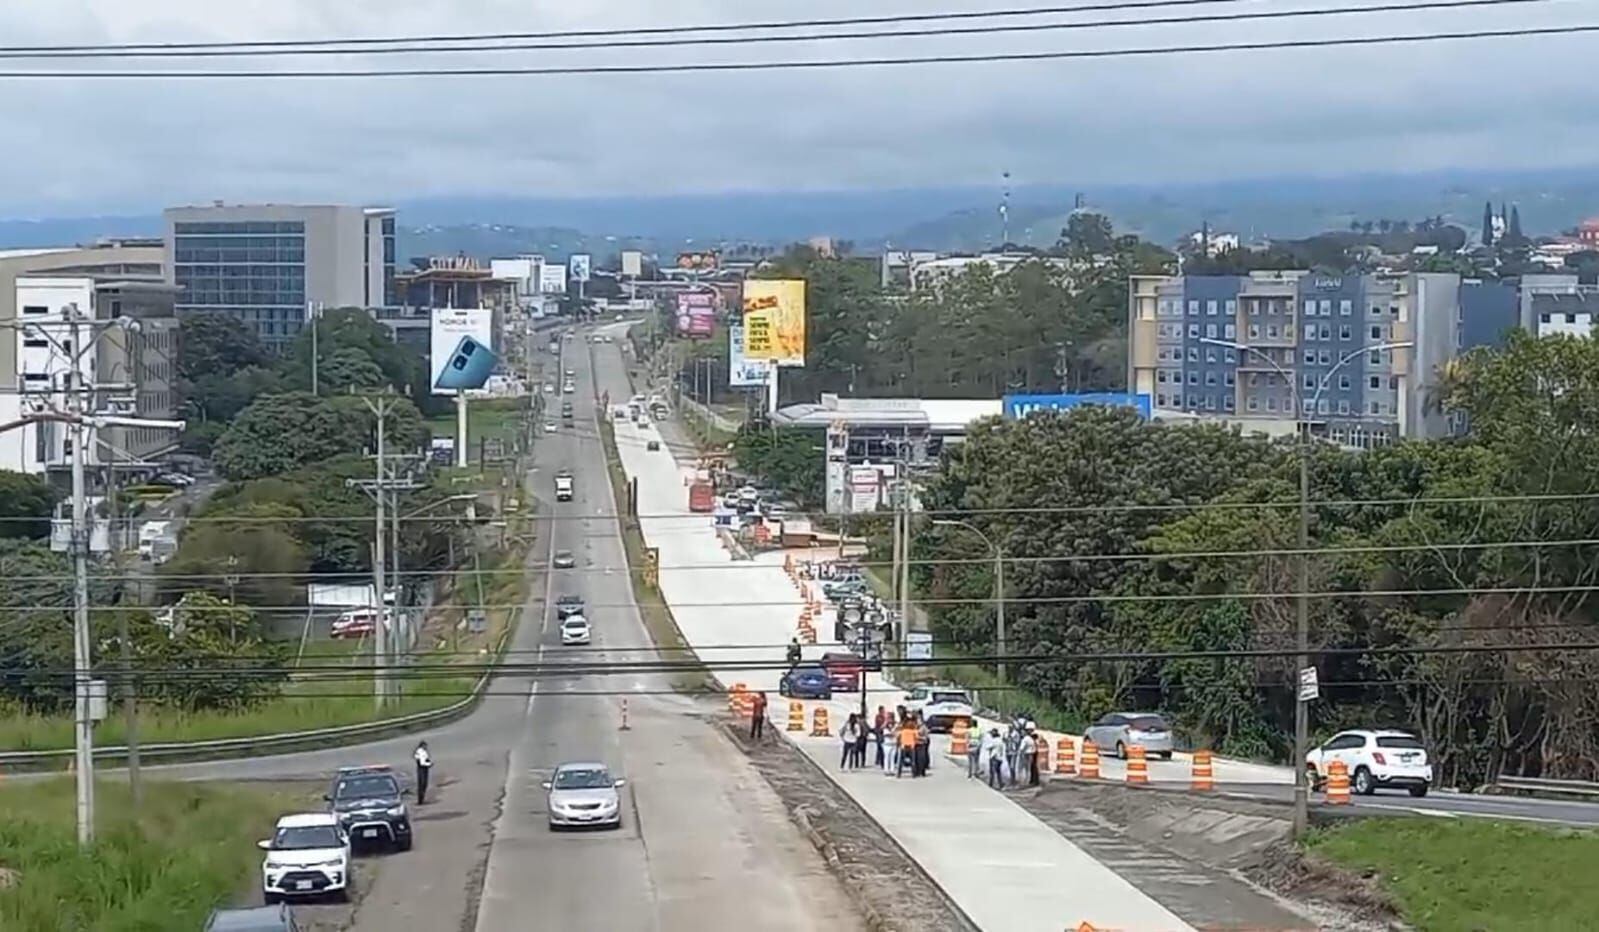 Este jueves se habilitó el paso por la radial a Alajuela en el sentido de ingreso a la ciudad, aunque aún quedan pendientes algunas obras. En próximos meses se intervendrán los carriles de salida.
Foto: MOPT